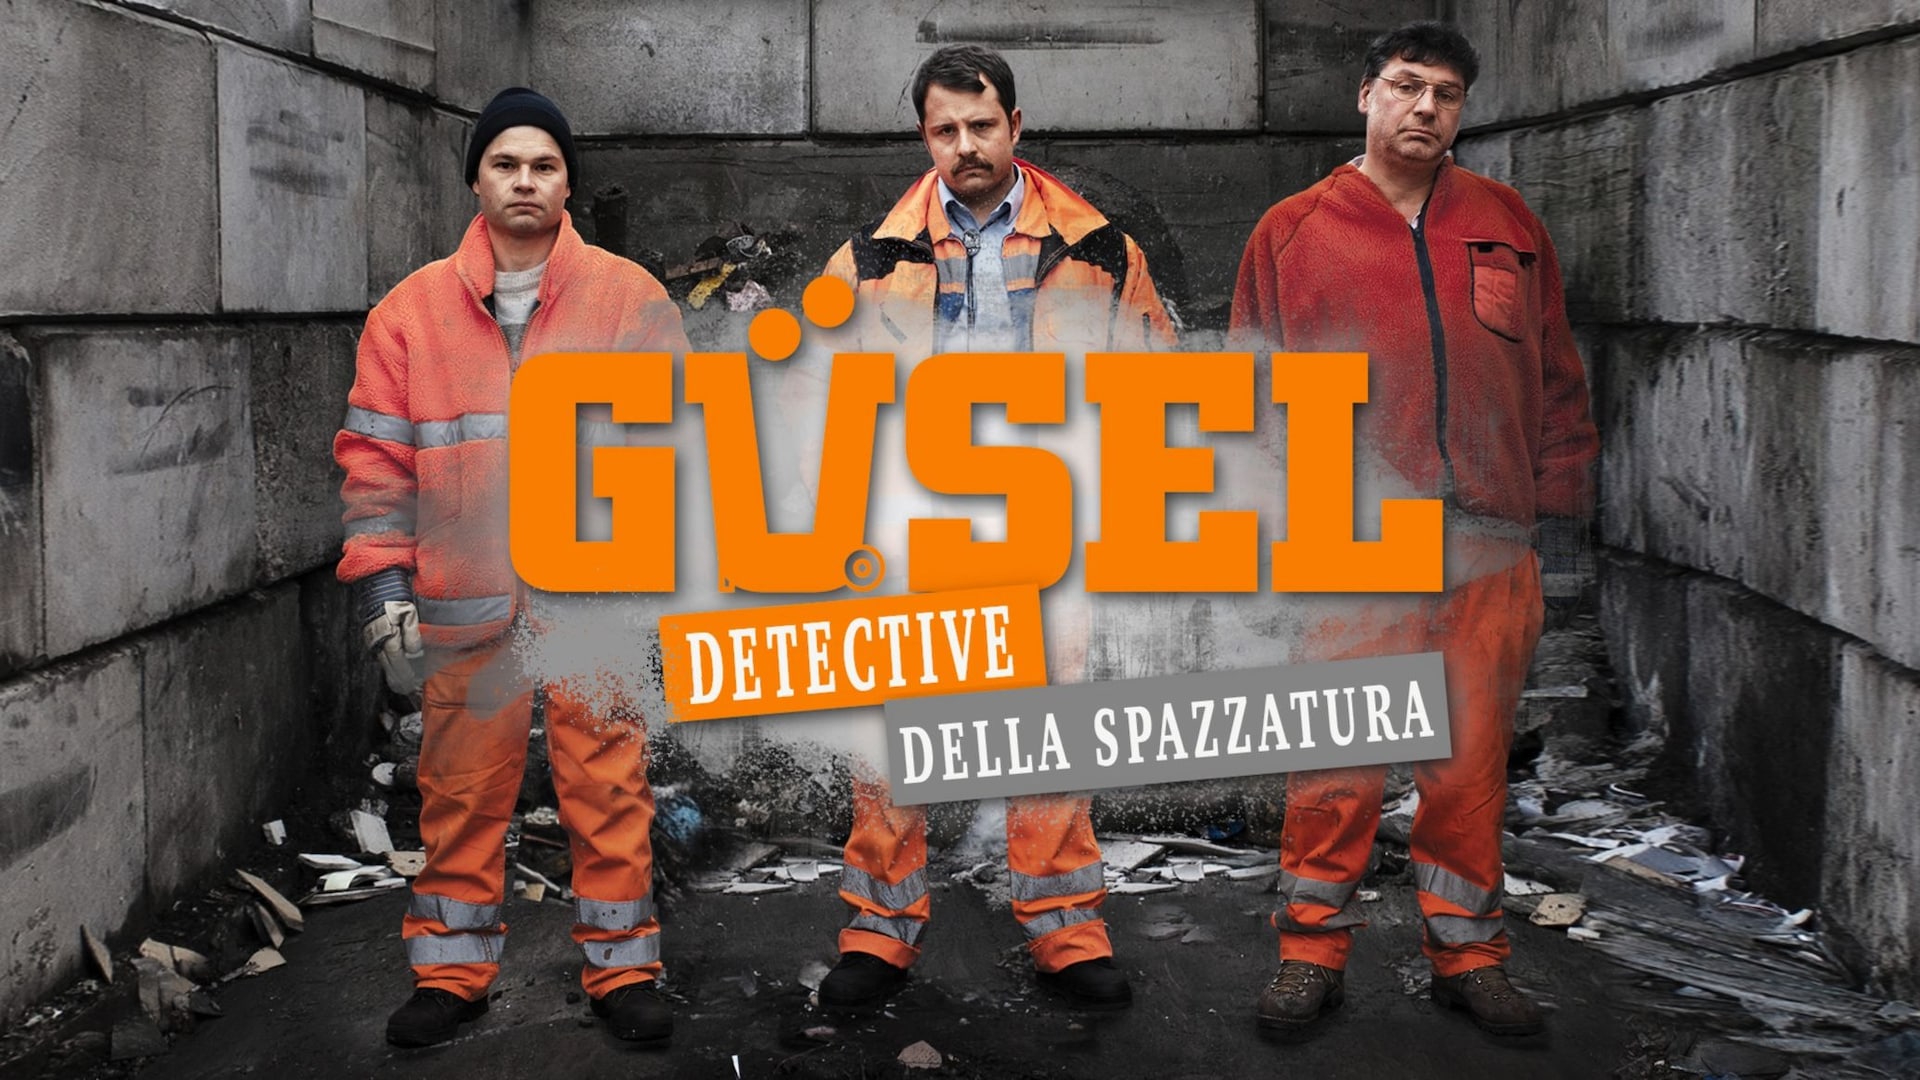 Güsel - Detective della spazzatura